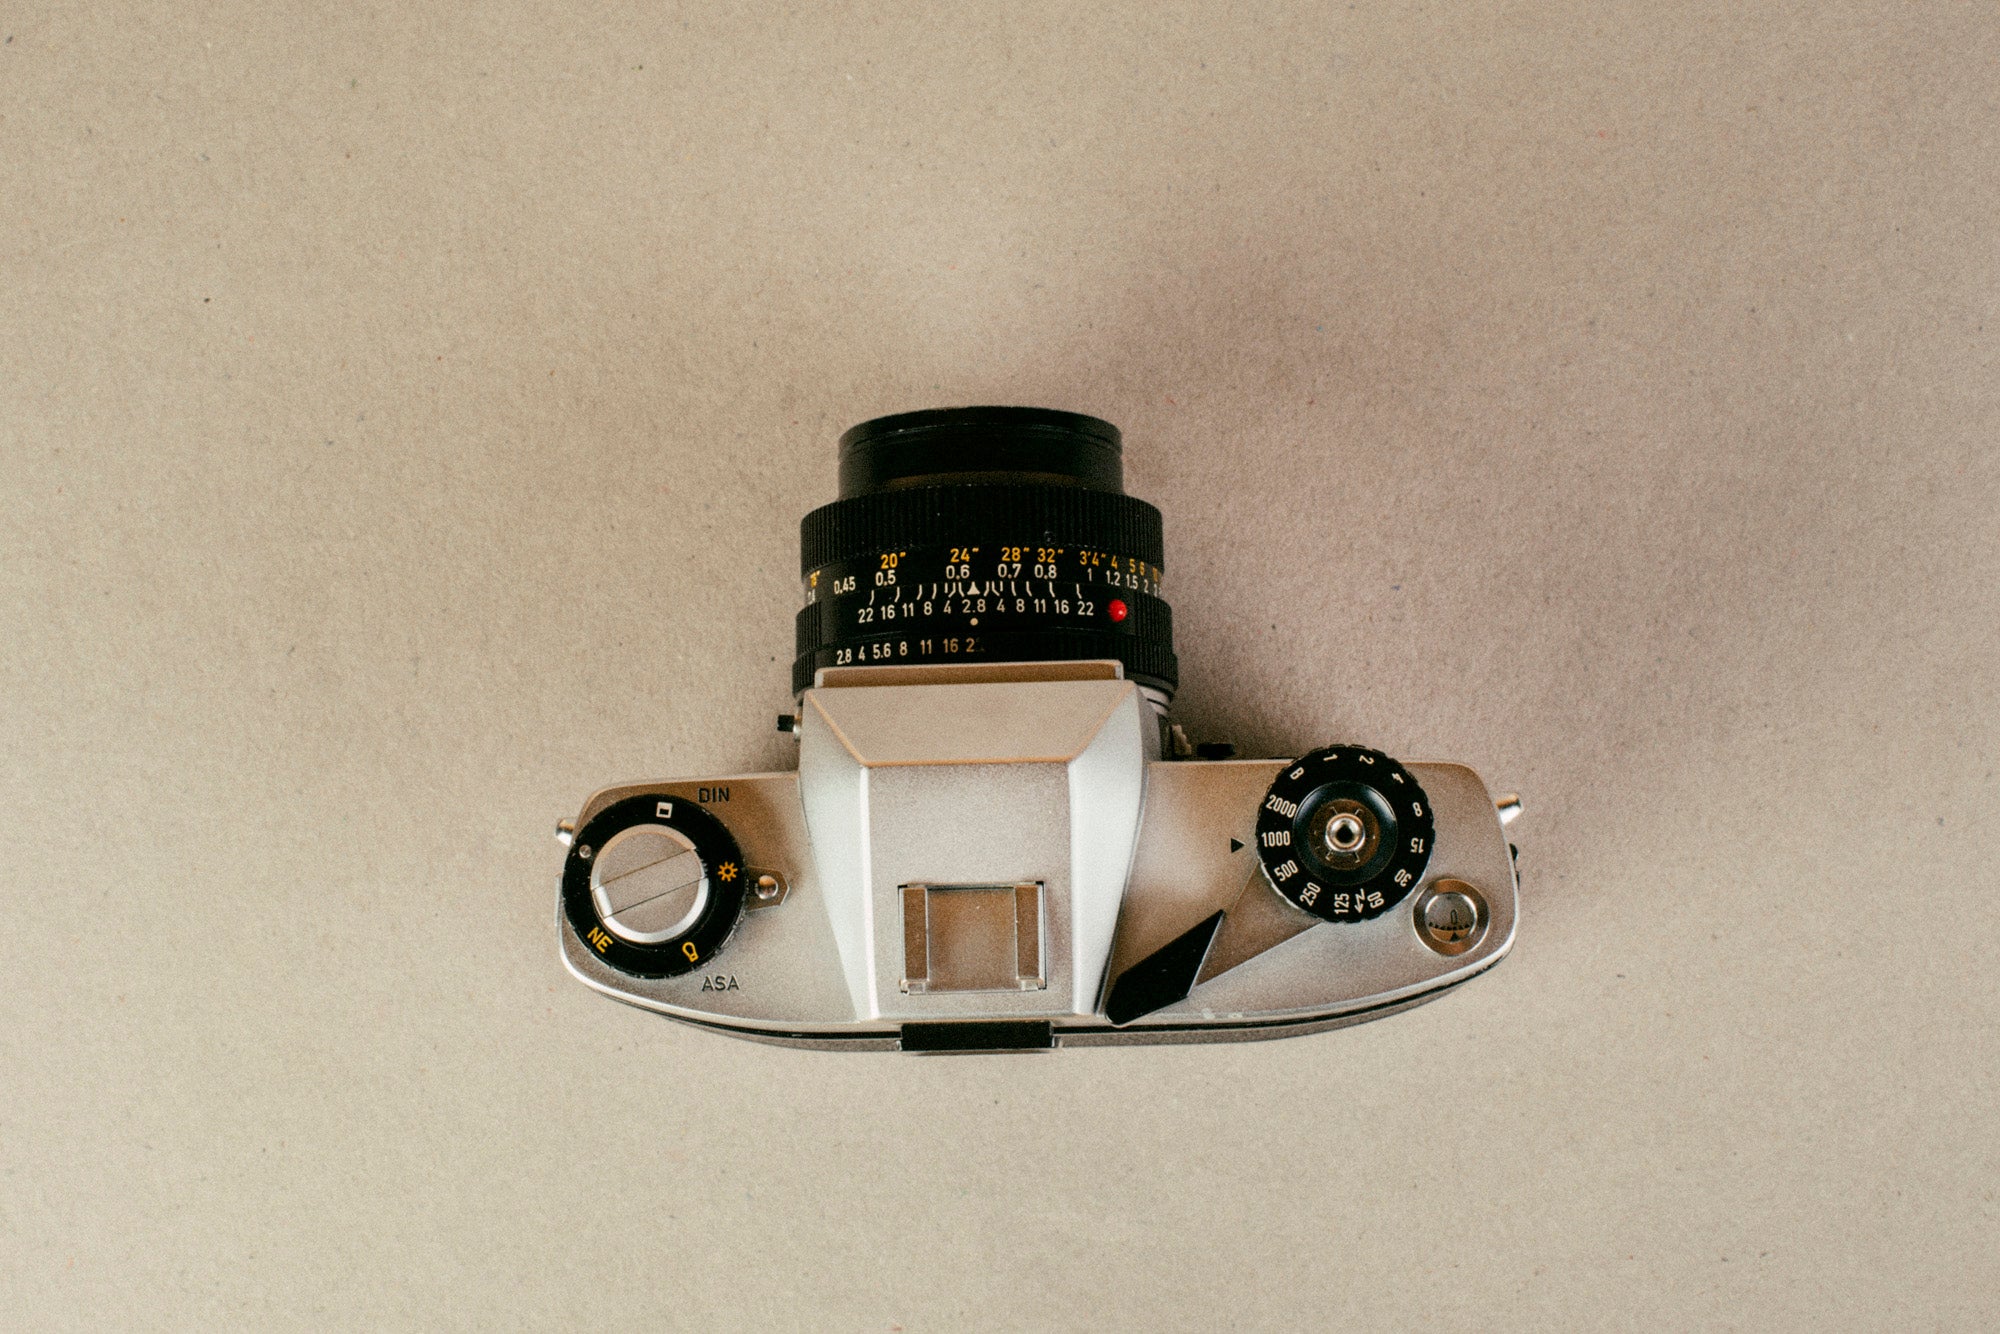 Leicaflex SL + Leitz Wetzlar 35mm f/1:2.8